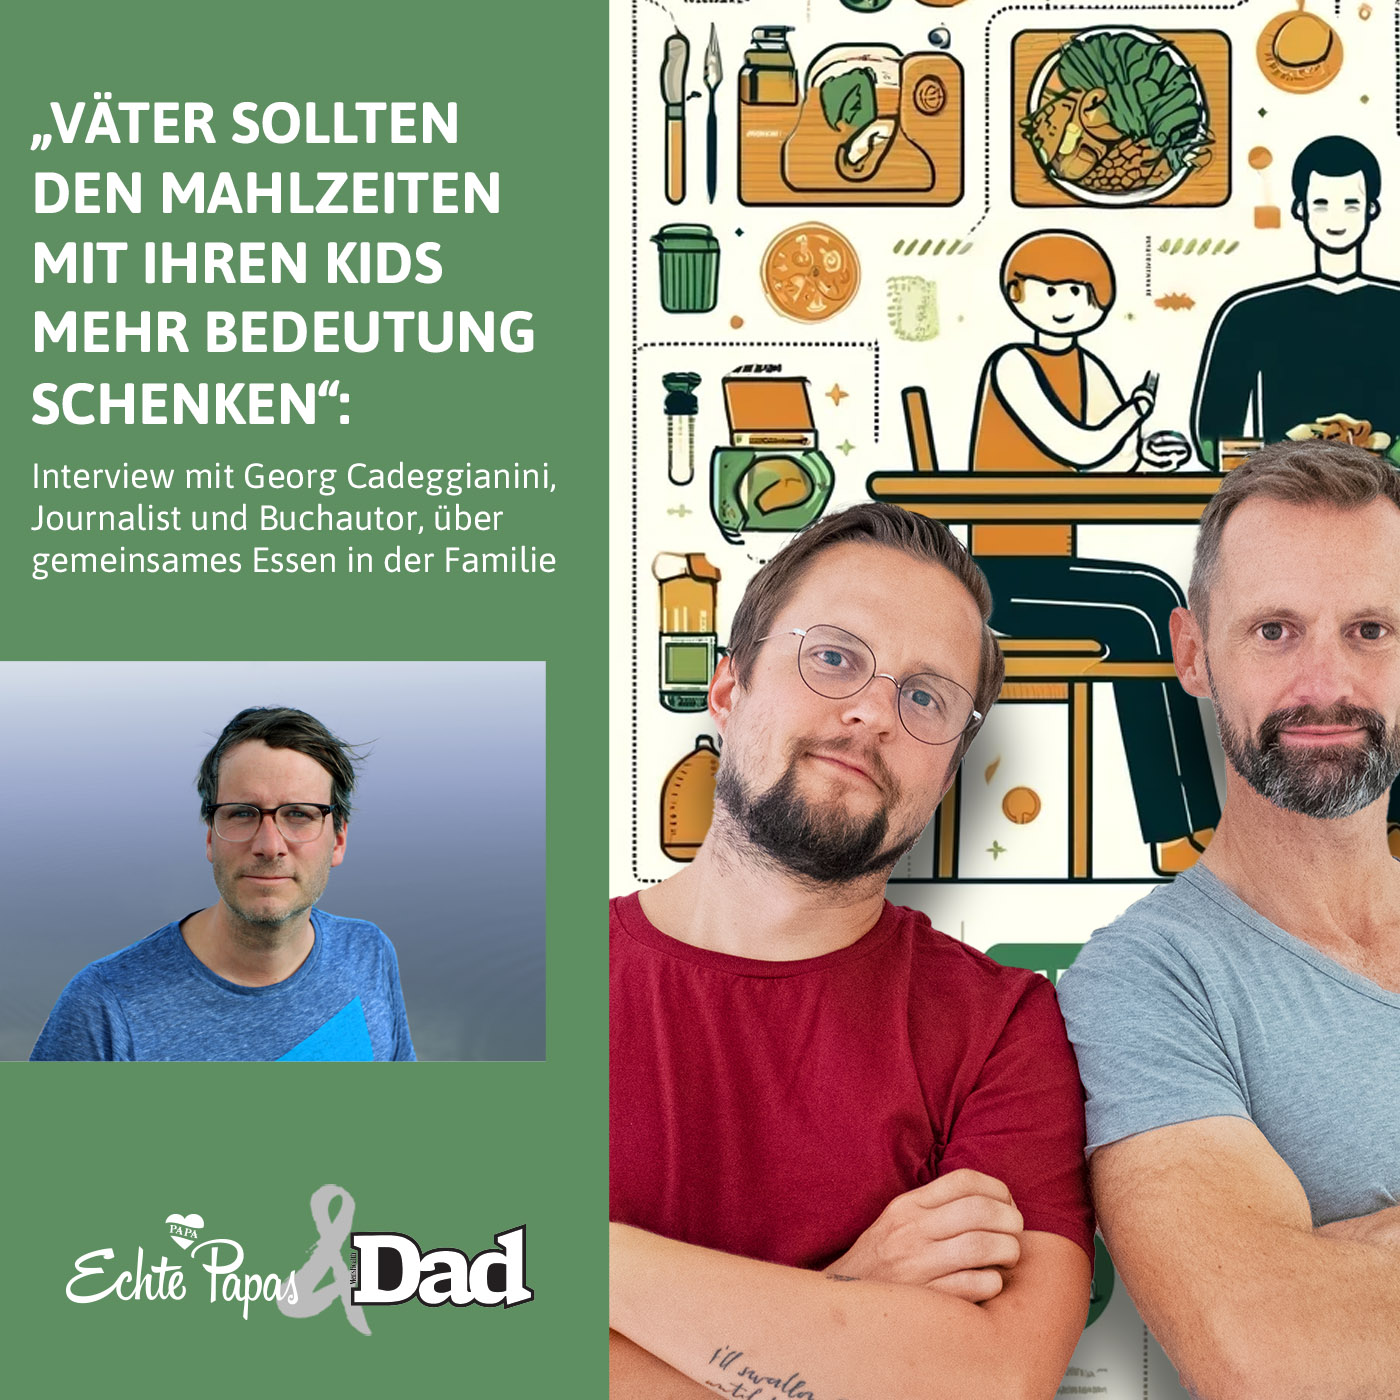 „Väter sollten den Mahlzeiten mit ihren Kids mehr Bedeutung schenken“: Interview mit Georg Cadeggianini, Journalist